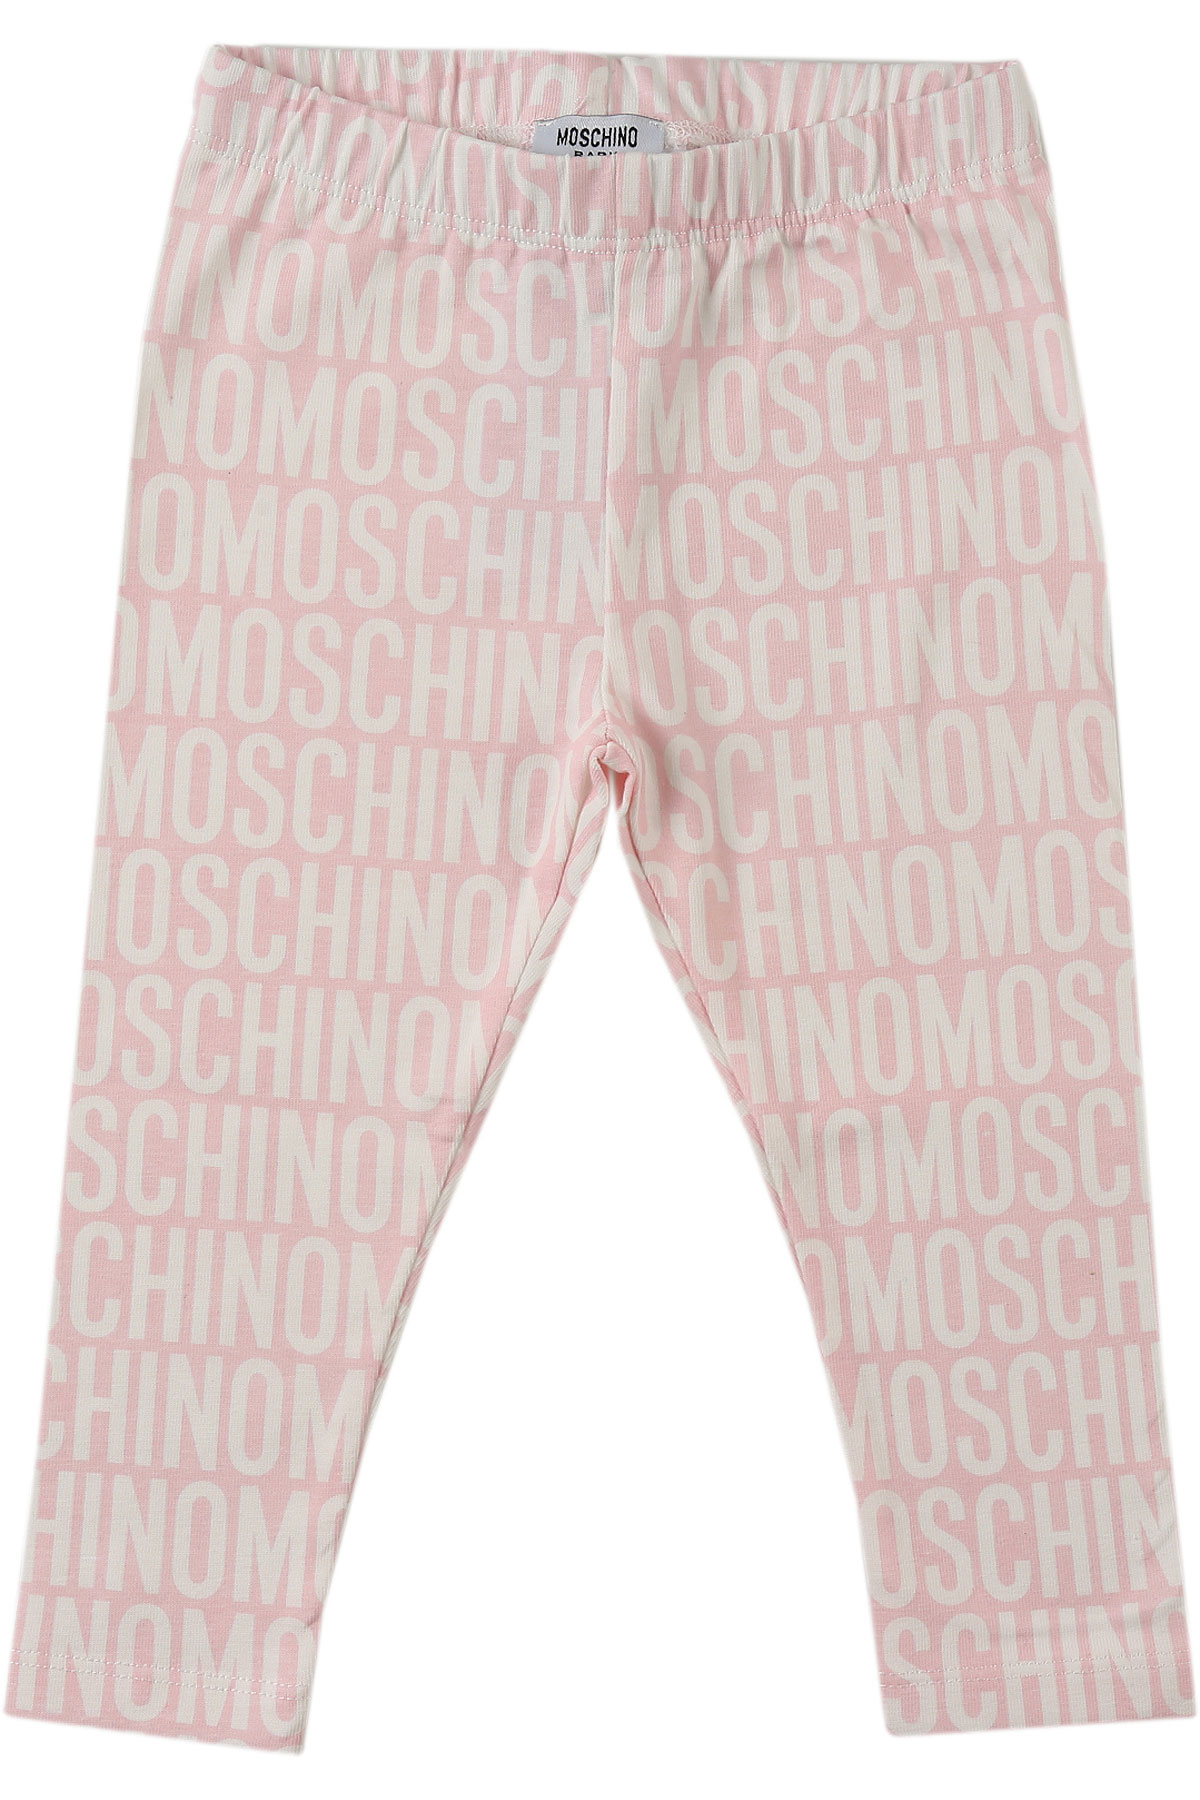 Moschino Pantalons Bébé pour Fille, Rose, Coton, 2017, 24M 2Y 3Y 6M 9M